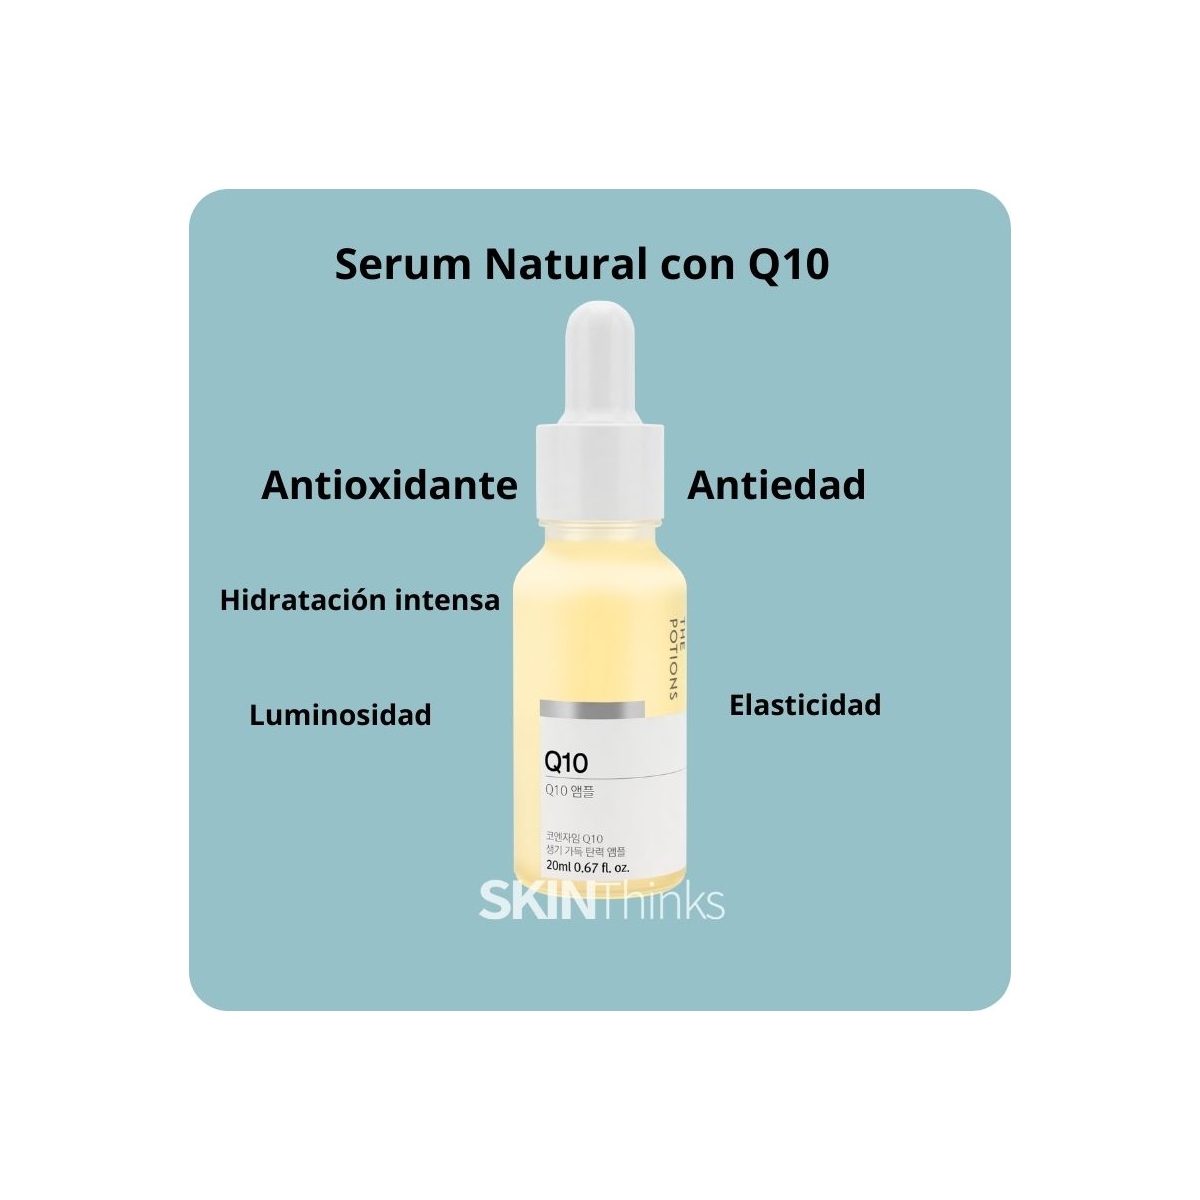 Serum y Ampoules al mejor precio: The Potions Q10 Ampoule Serum antioxidante y antiedad de The Potions en Skin Thinks - Piel Seca